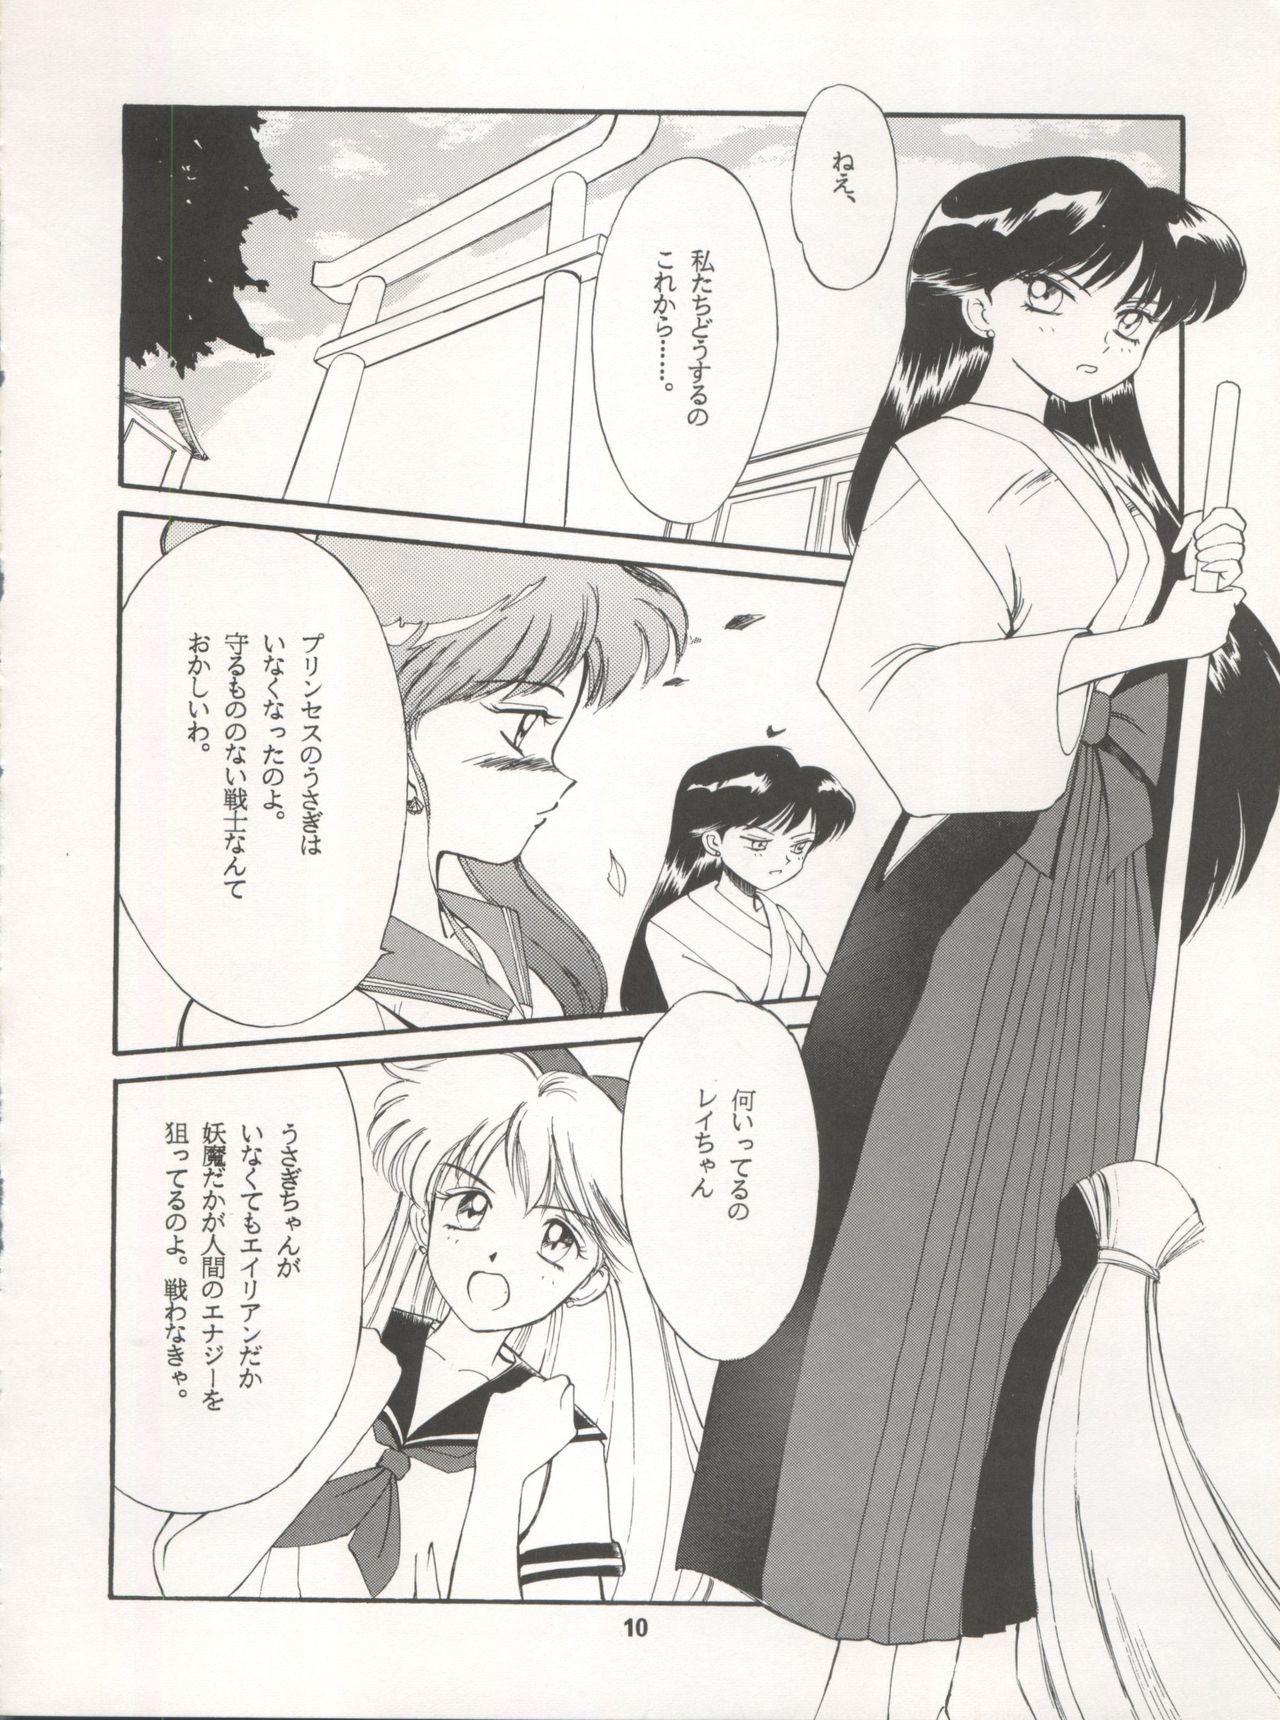 Fit LUNATIC ASYLUM DYNAMIC SUMMER - Sailor moon Rough Sex - Page 10